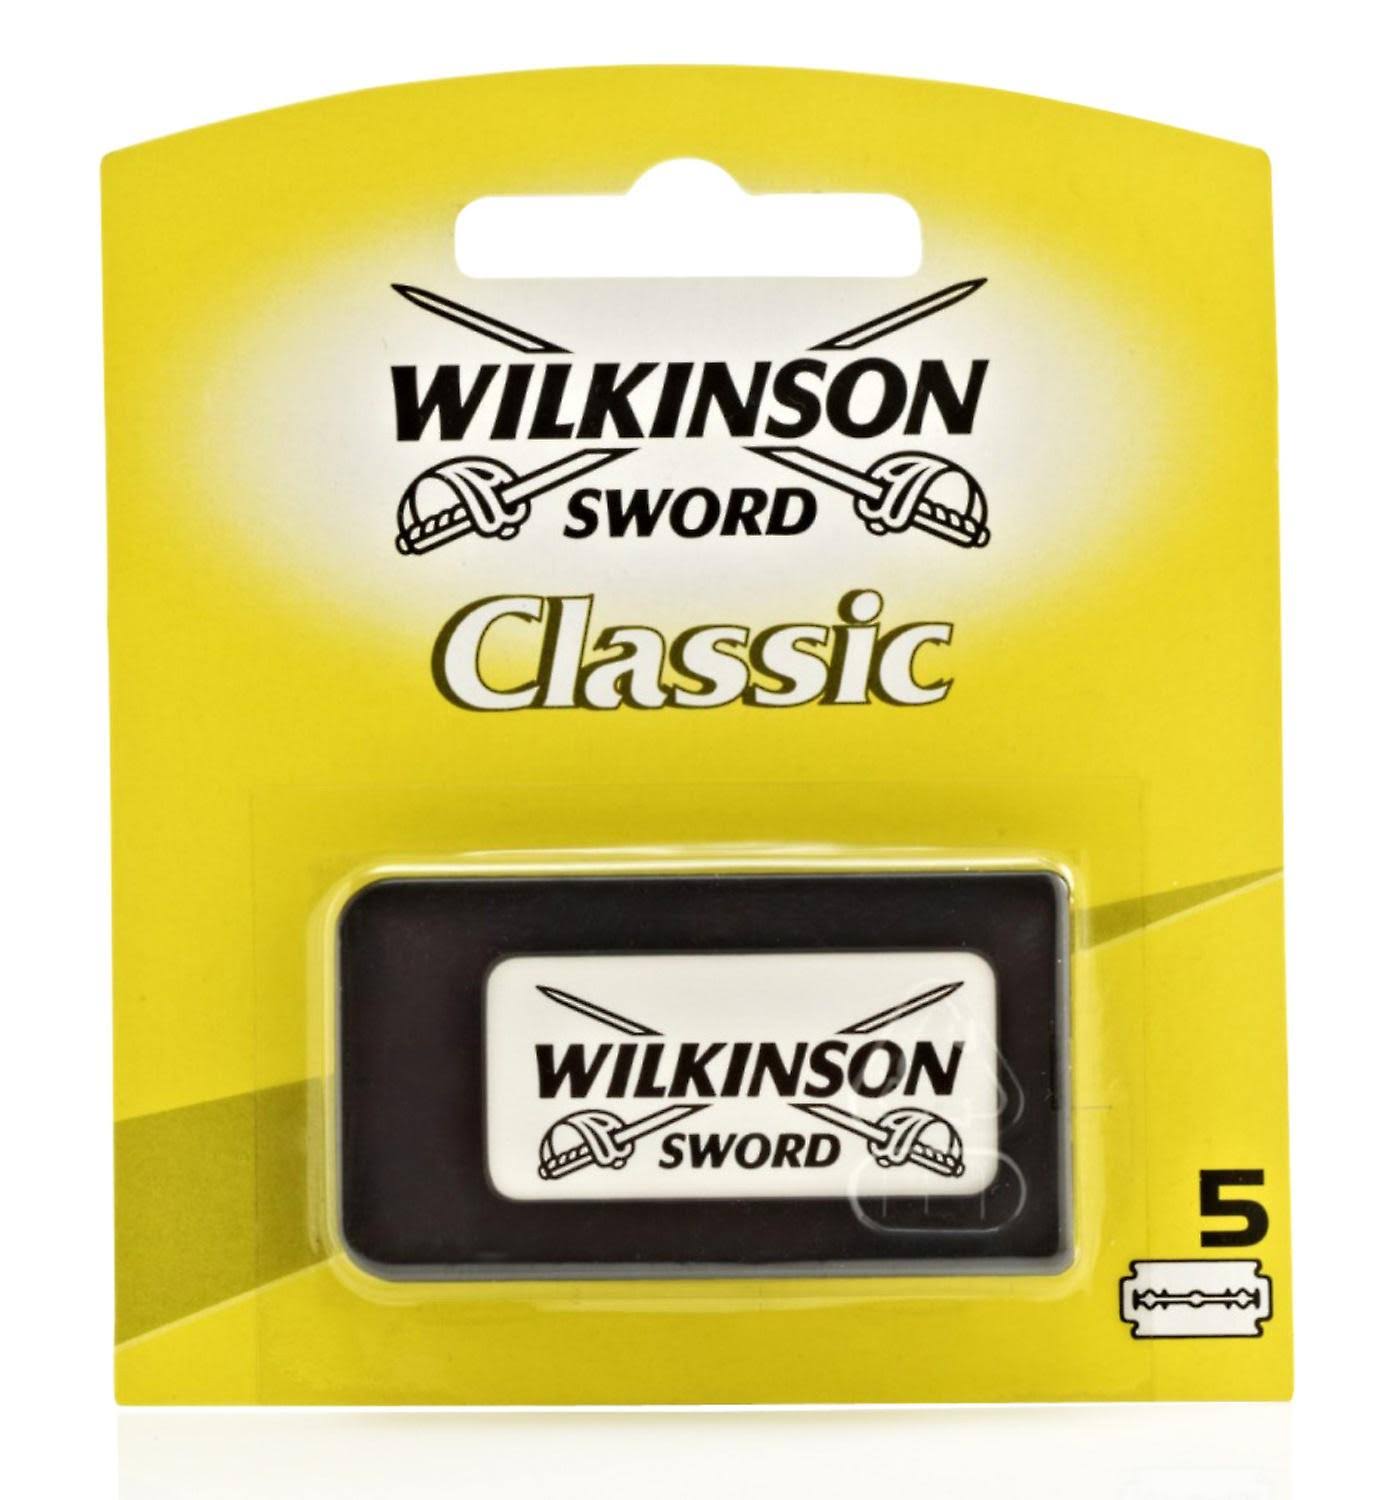 Wilkinson Sword Classic Double Edge Razor Blades - 5pk